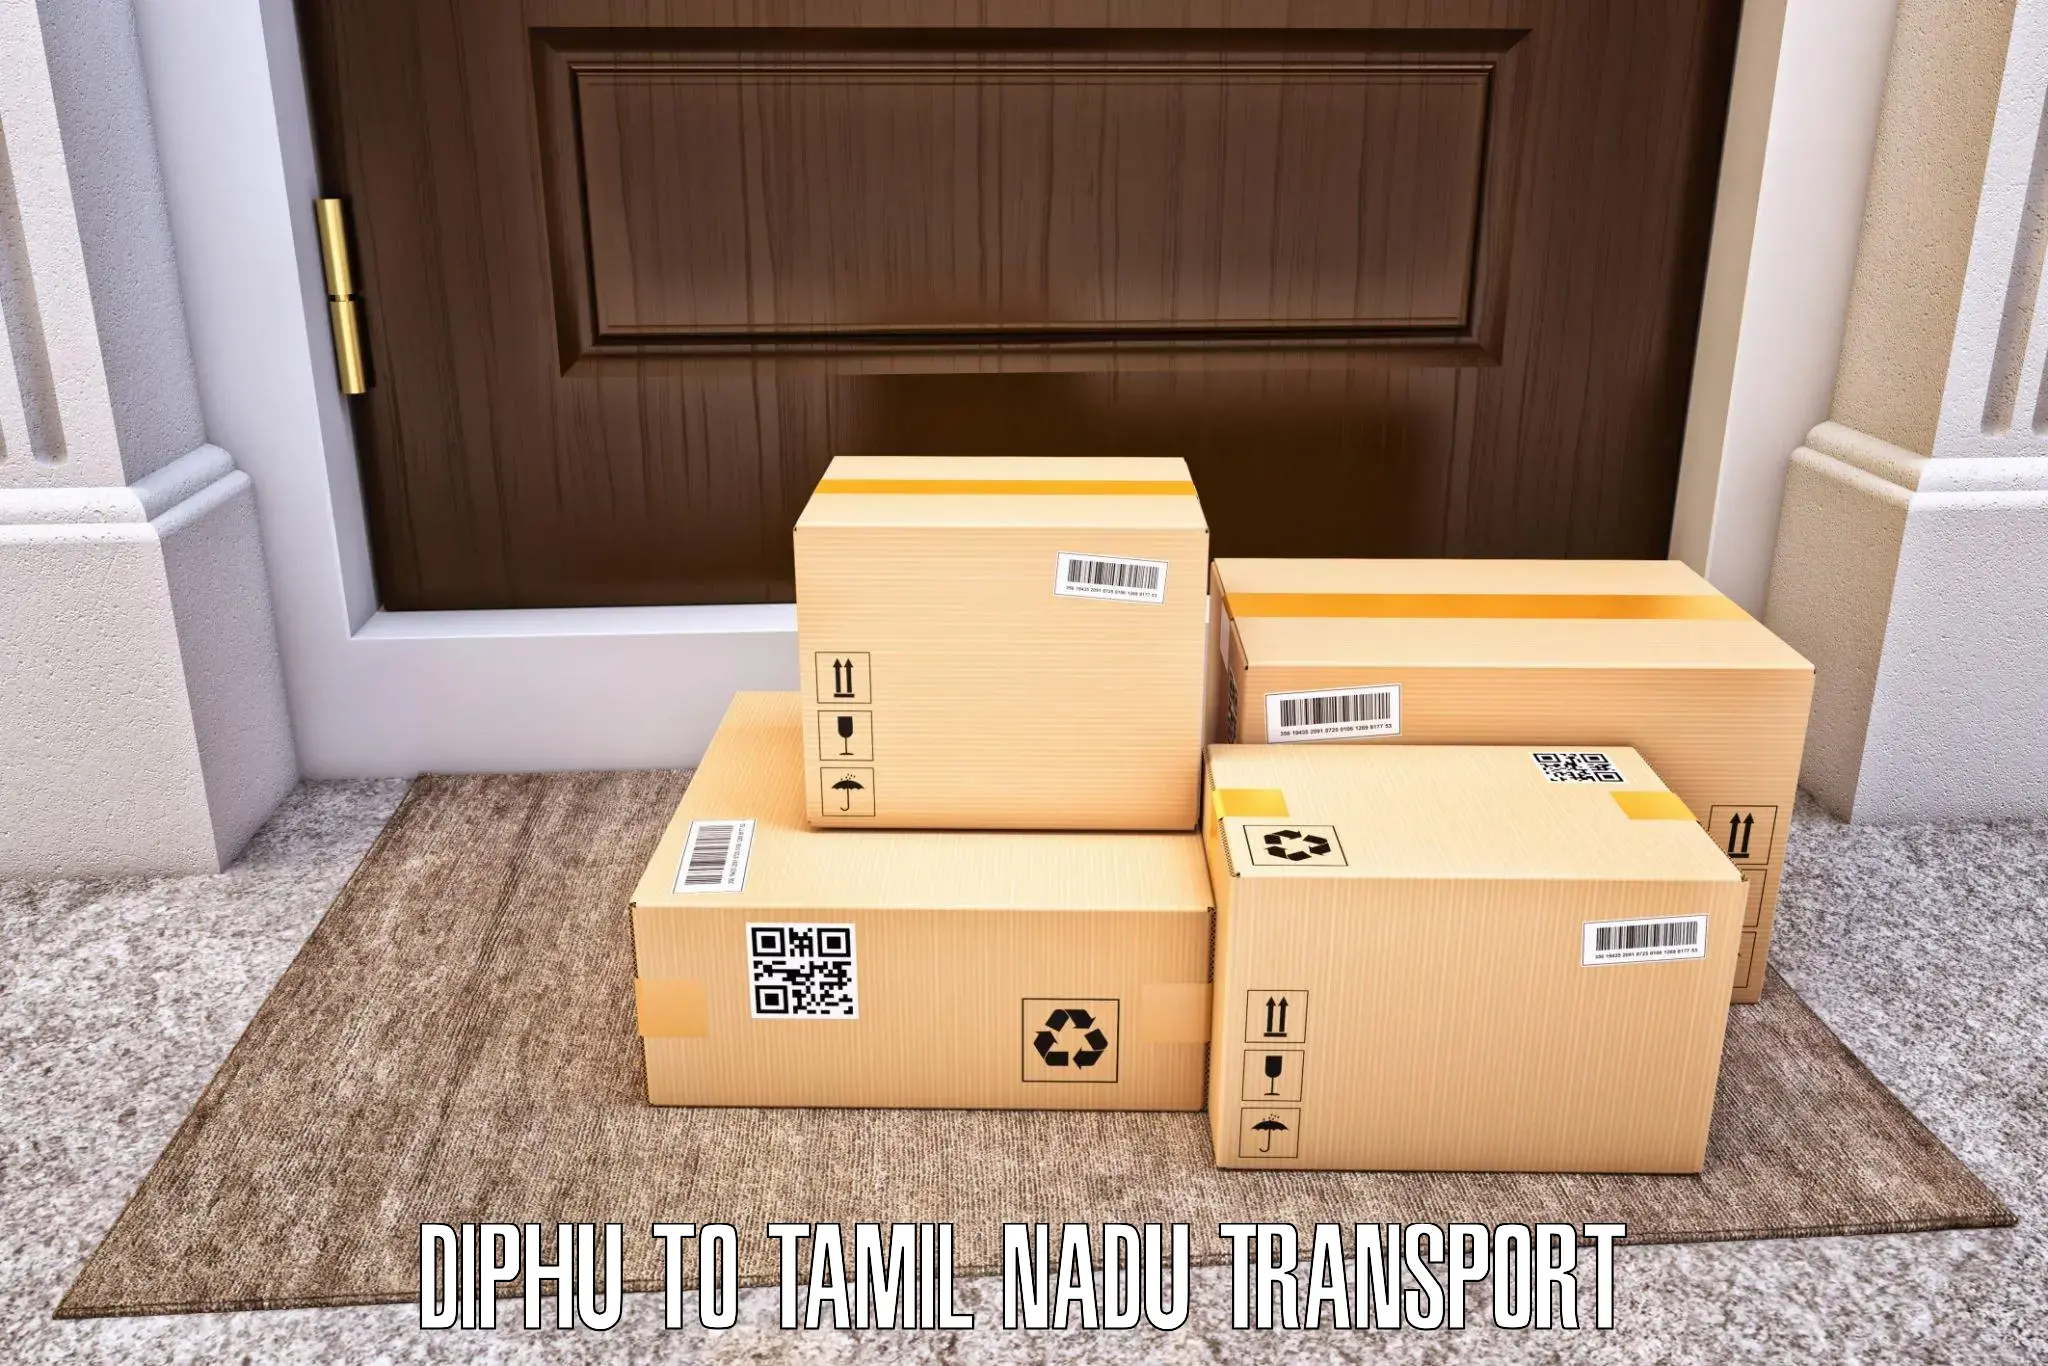 Logistics transportation services in Diphu to Kangeyam